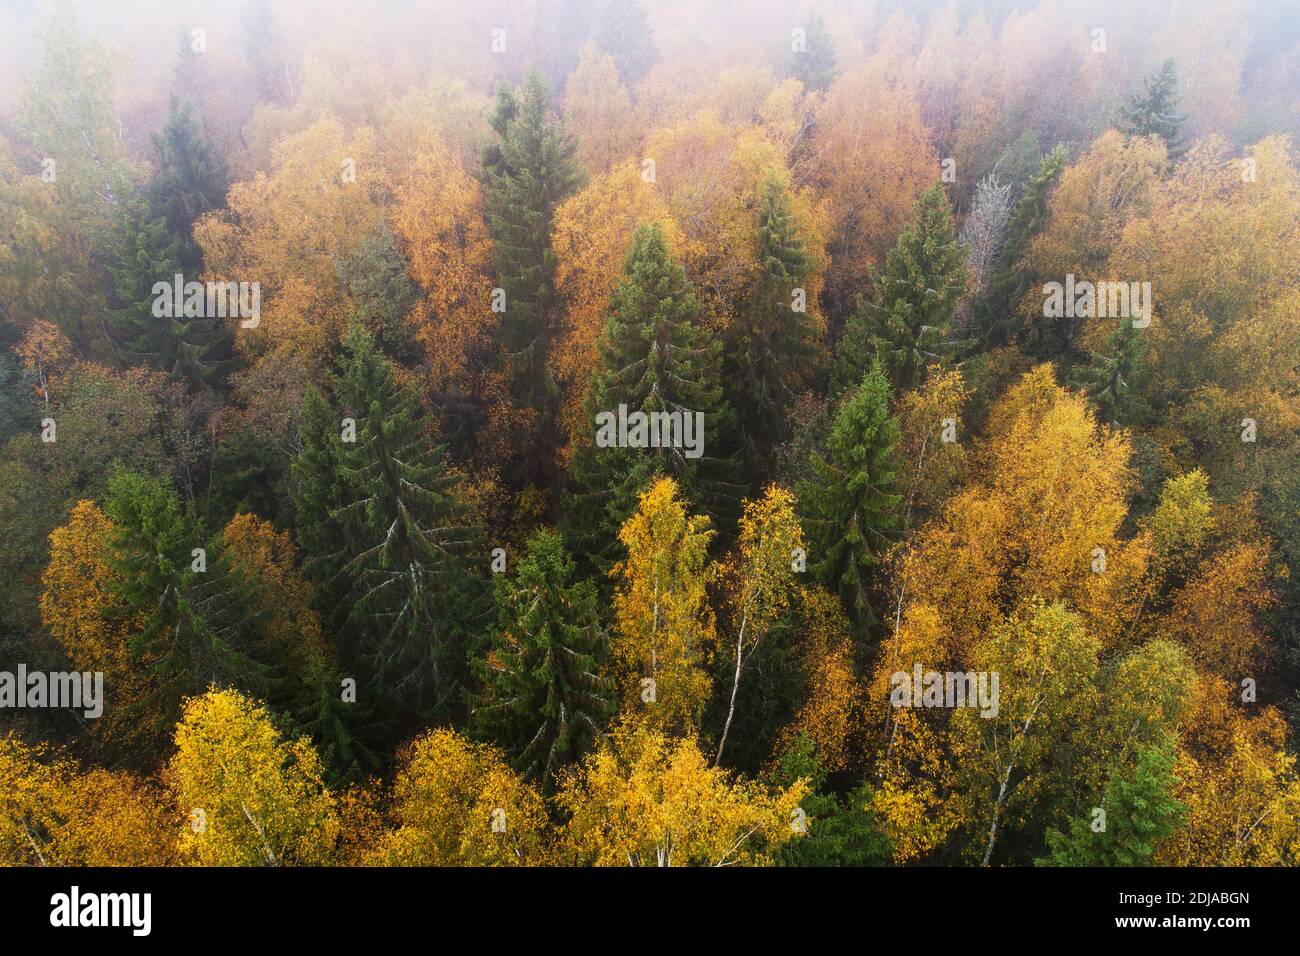 Vue aérienne de la forêt boréale sauvage luxuriante pendant le feuillage d'automne coloré dans la nature européenne. Banque D'Images